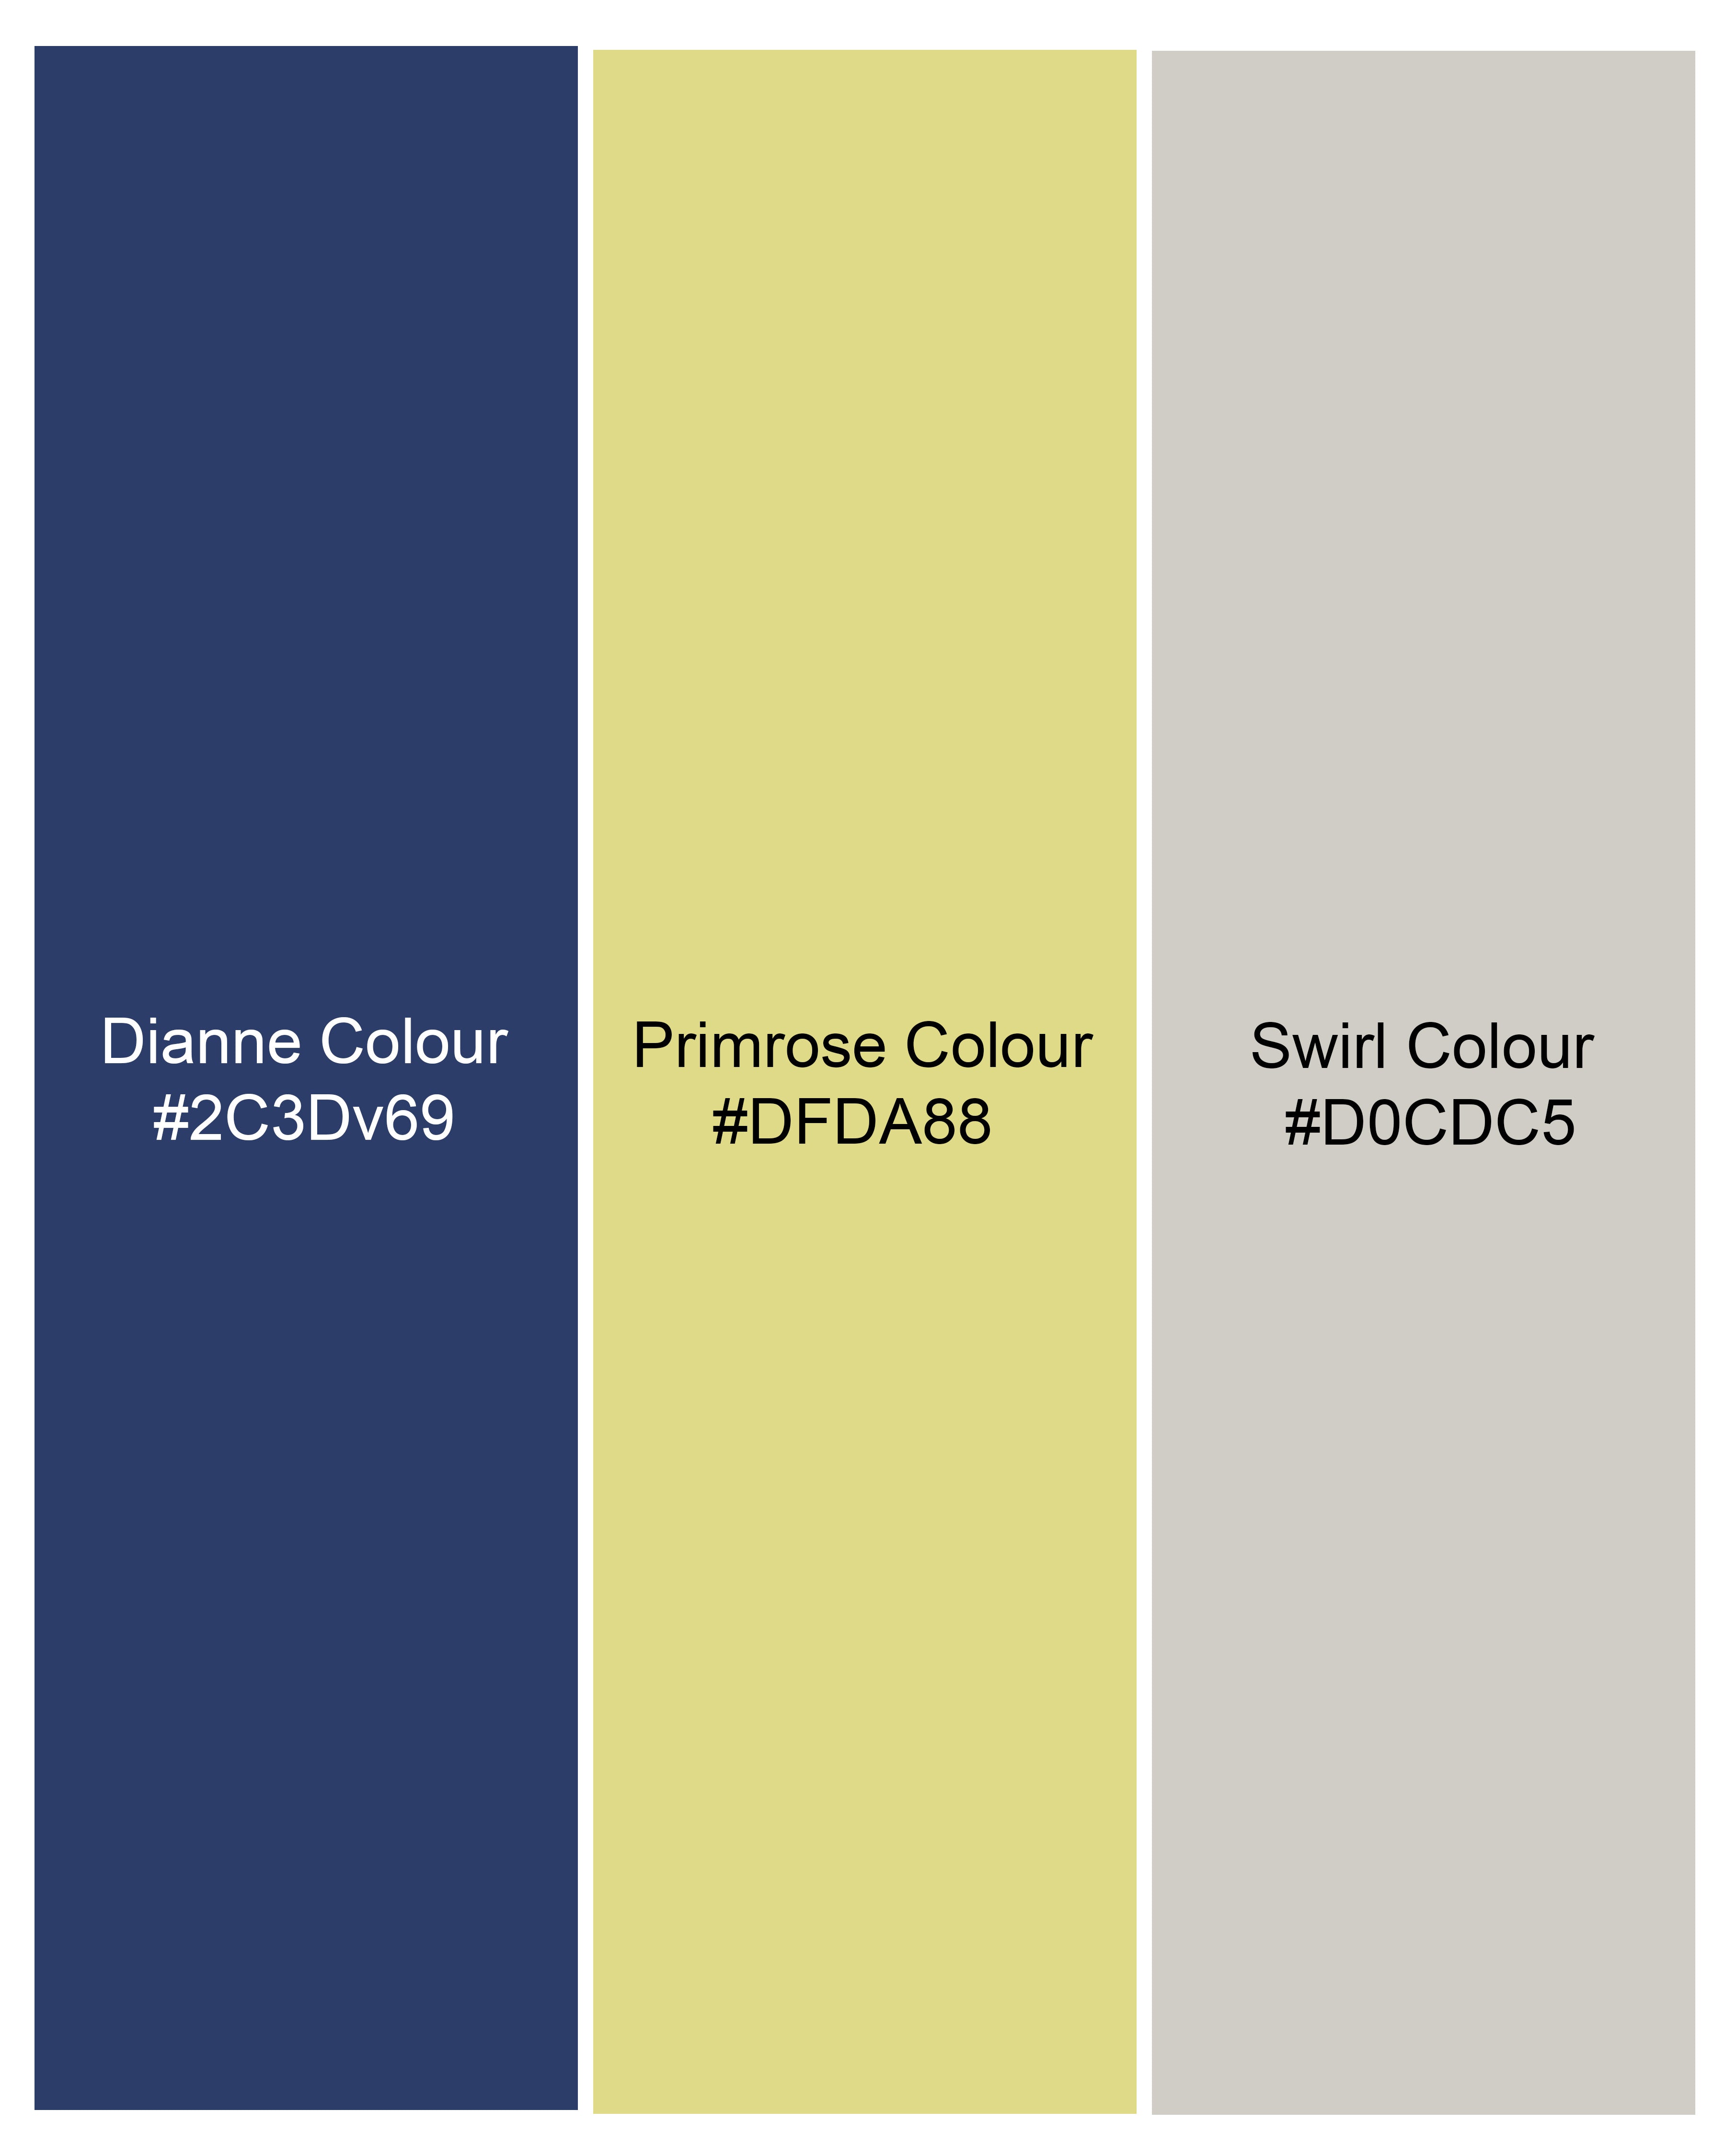 Dianne Blue Floral Printed Premium Cotton Shirt WS054-BLE-32, WS054-BLE-34, WS054-BLE-36, WS054-BLE-38, WS054-BLE-40, WS054-BLE-42